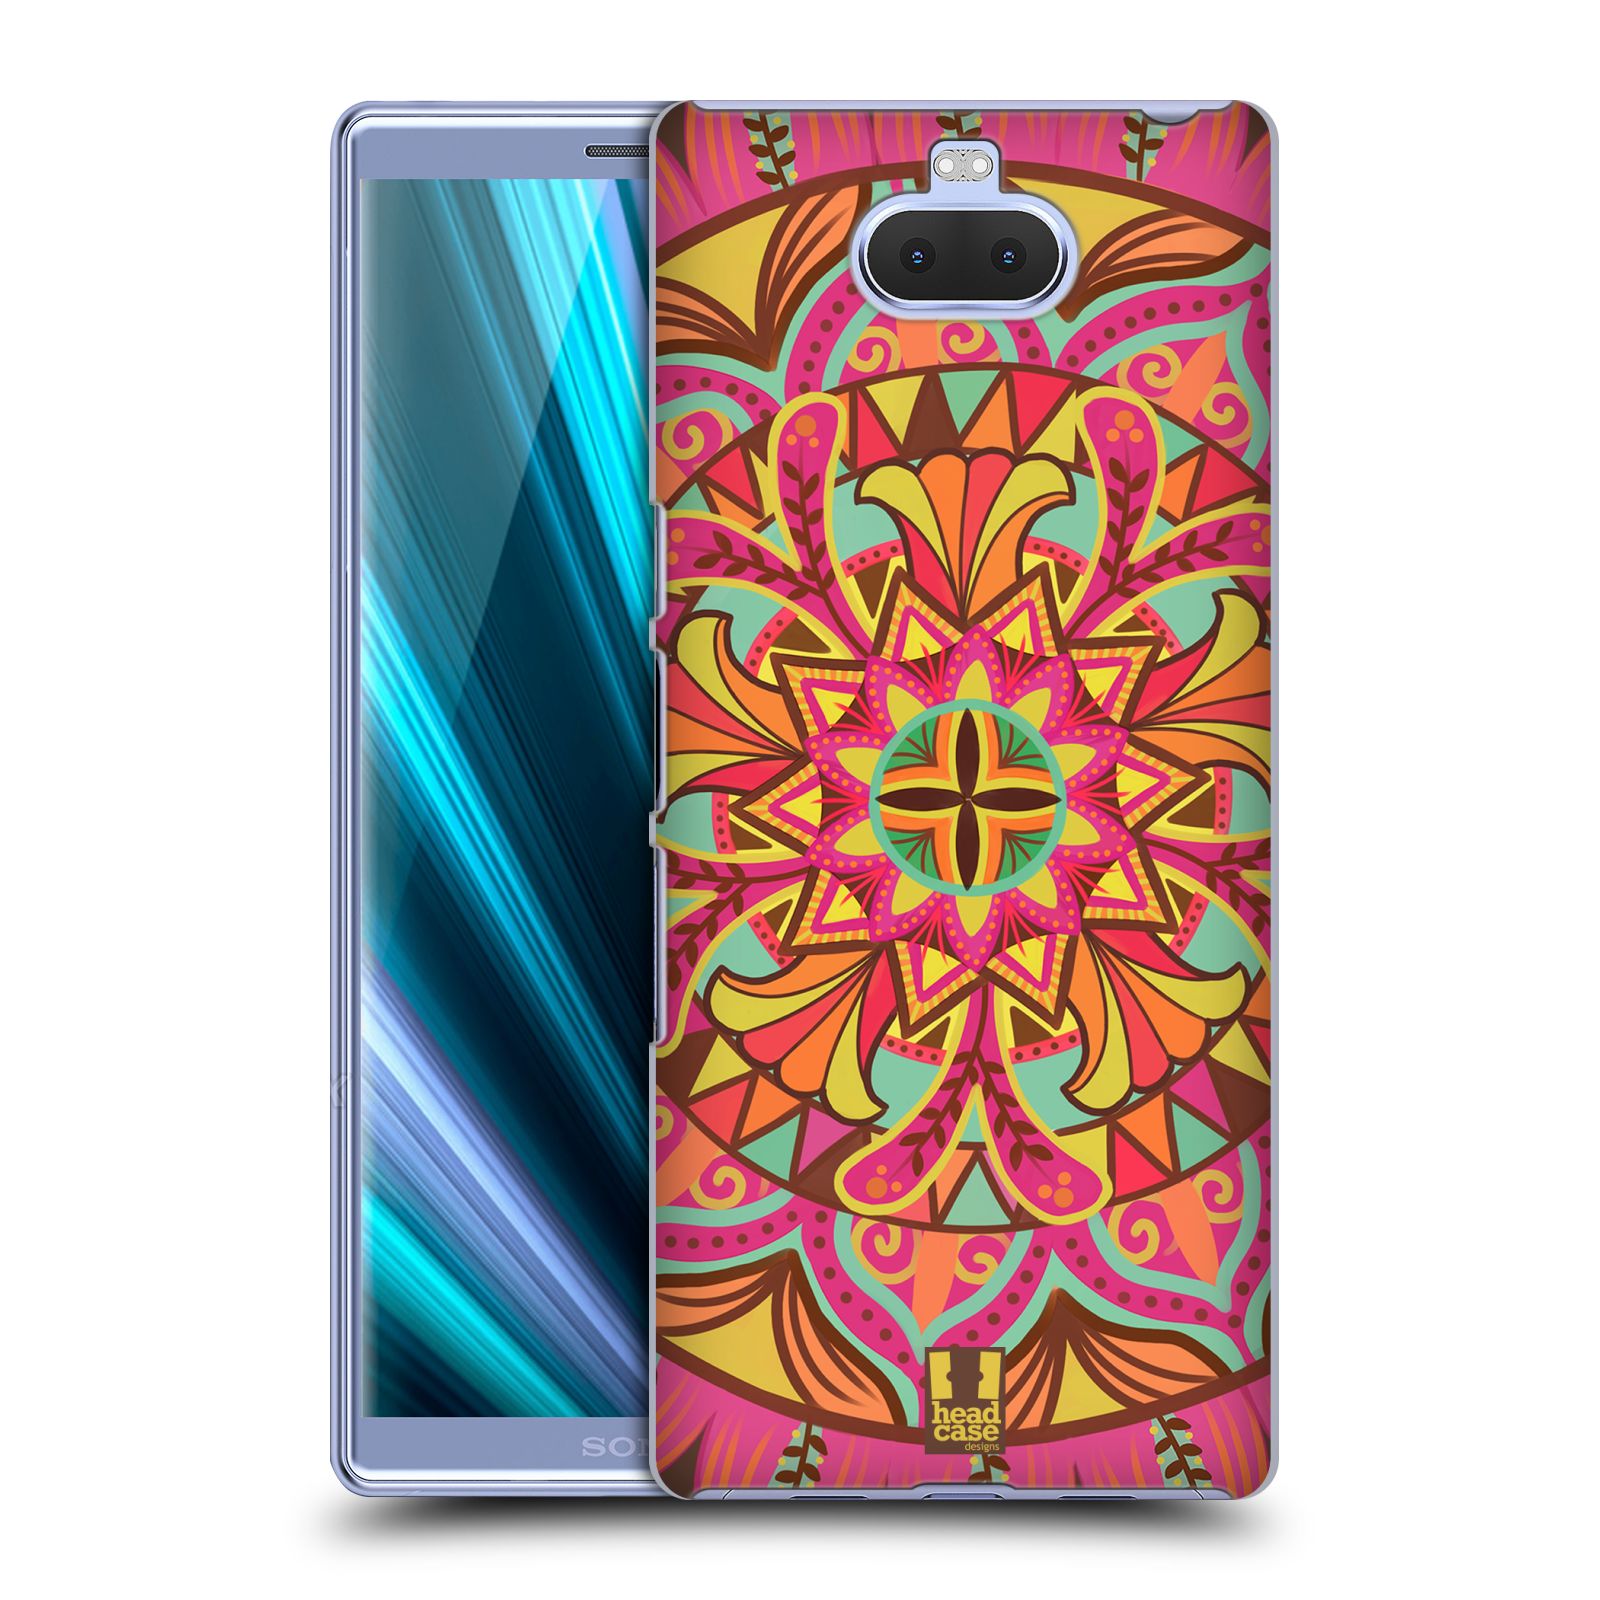 Pouzdro na mobil Sony Xperia 10 - Head Case - vzor Indie Mandala květinový motiv PARADISE LOVE